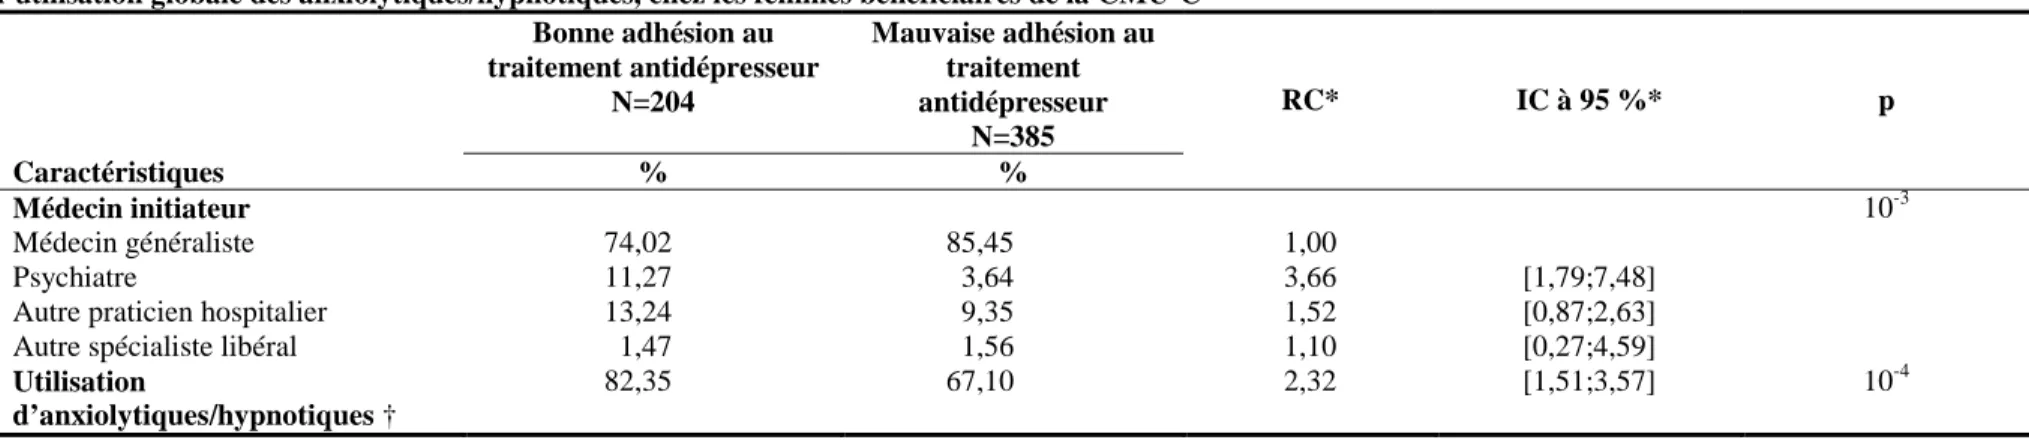 Tableau 10. Résultats de l’analyse multivariable des facteurs associés à l’adhésion au traitement antidépresseur sur six mois de remboursement en fonction de  l’utilisation globale des anxiolytiques/hypnotiques, chez les femmes bénéficiaires de la CMU-C 